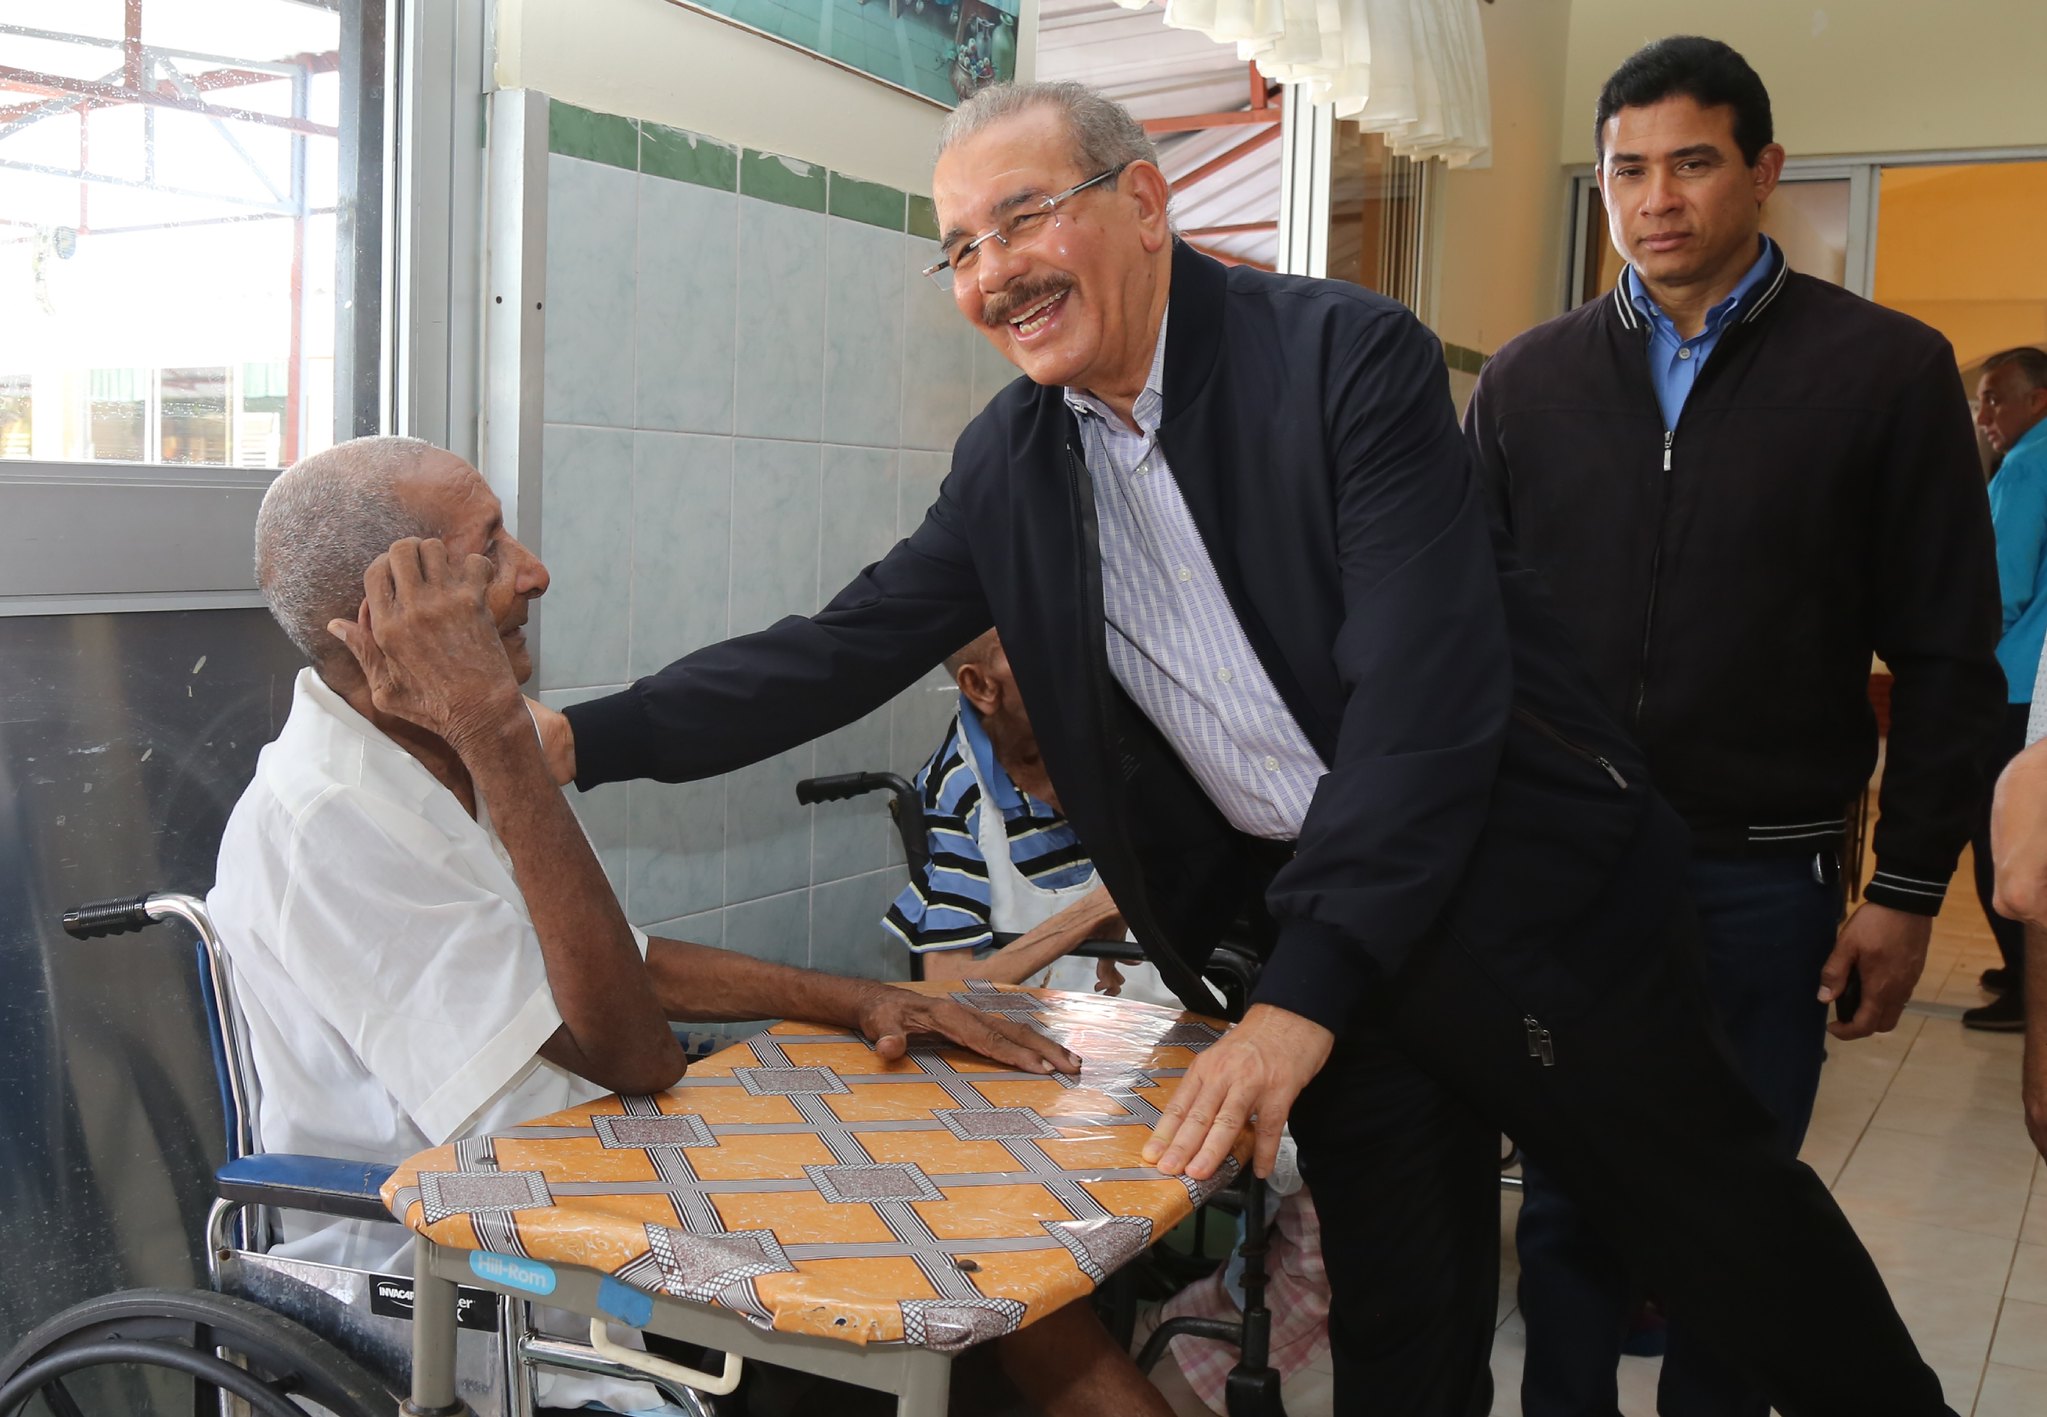 REPÚBLICA DOMINICANA: República Dominicana avanza en protección adultos mayores; CONAPE dignifica vida de 283,089 personas